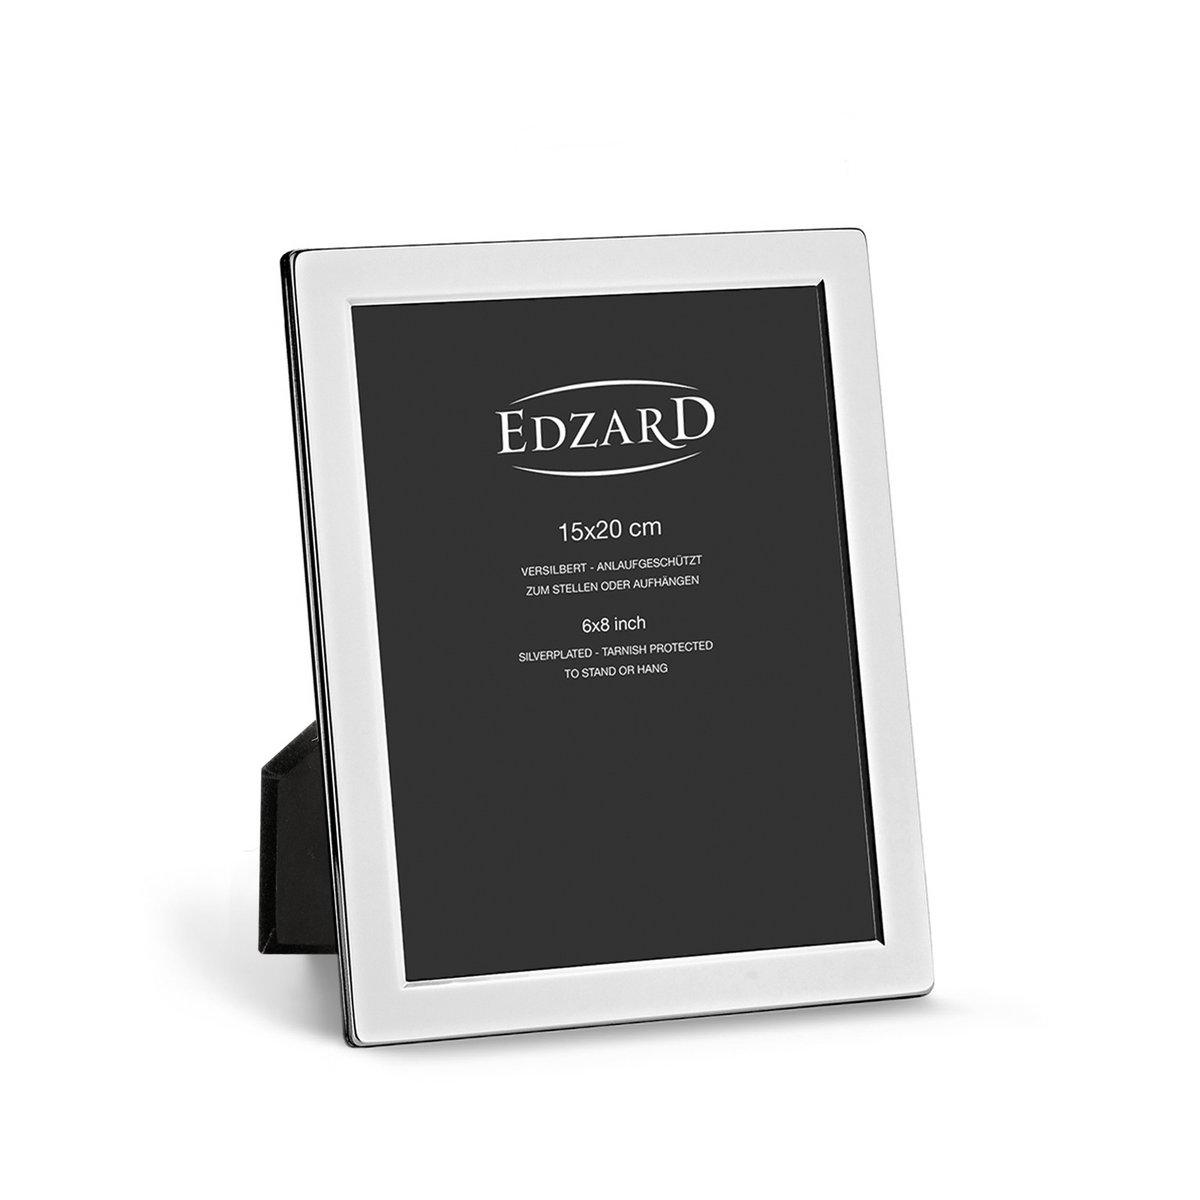 EDZARD Fotorahmen Salerno für Foto 15 x 20 cm, edel versilbert, anlaufgeschützt, mit 2 Aufhängern - HomeDesign Knaus